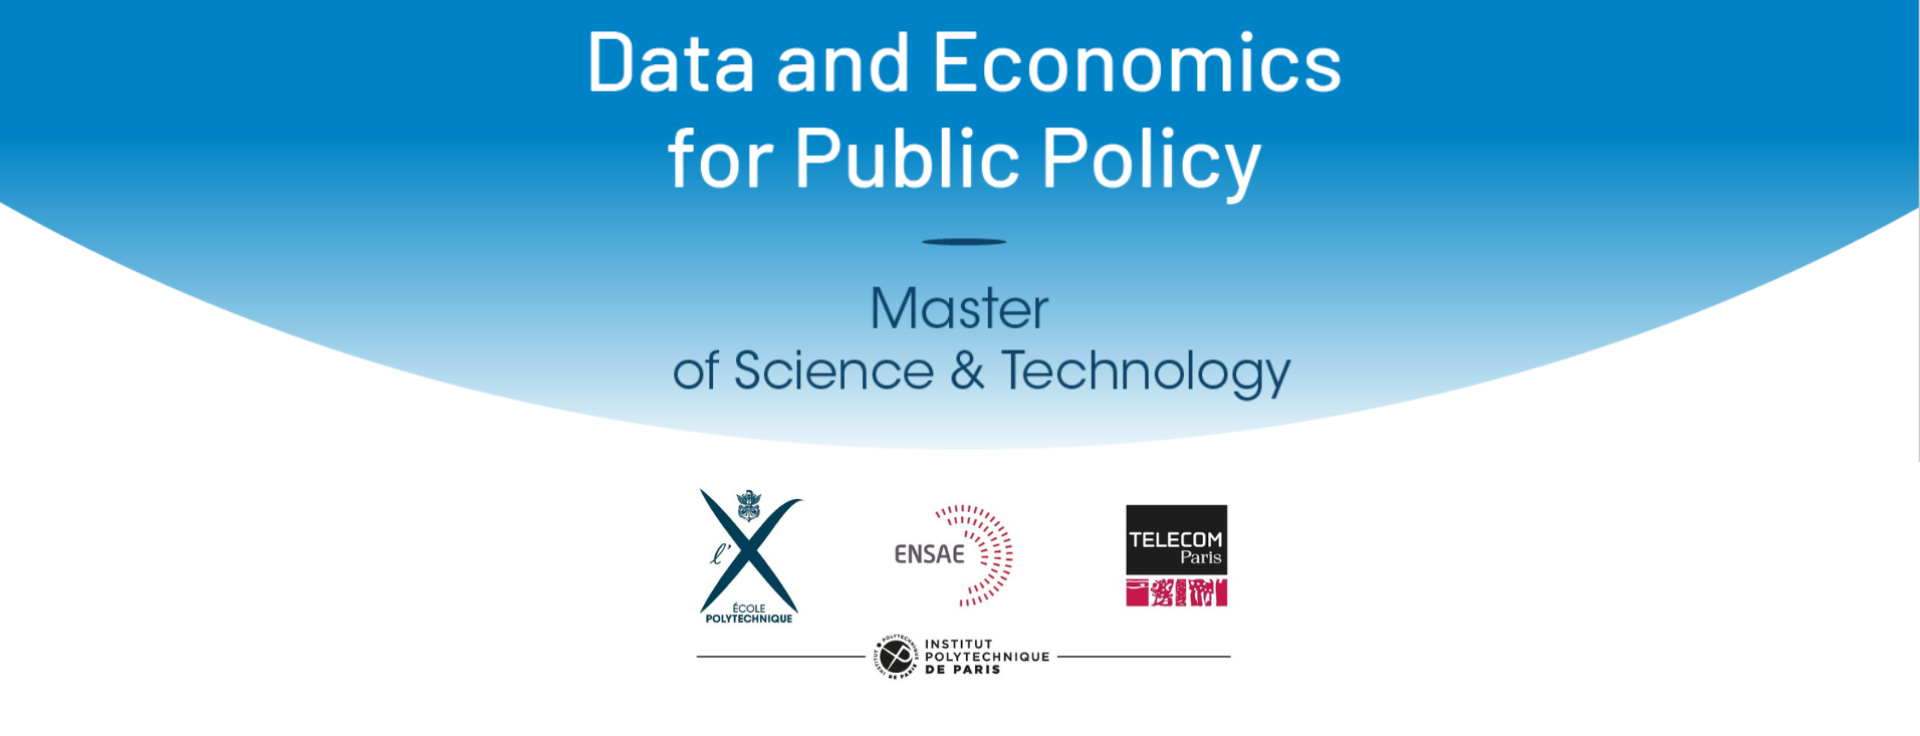 Webinaire le 15/12 à 12h30 : MSc&T Data and Economics for Public Policy